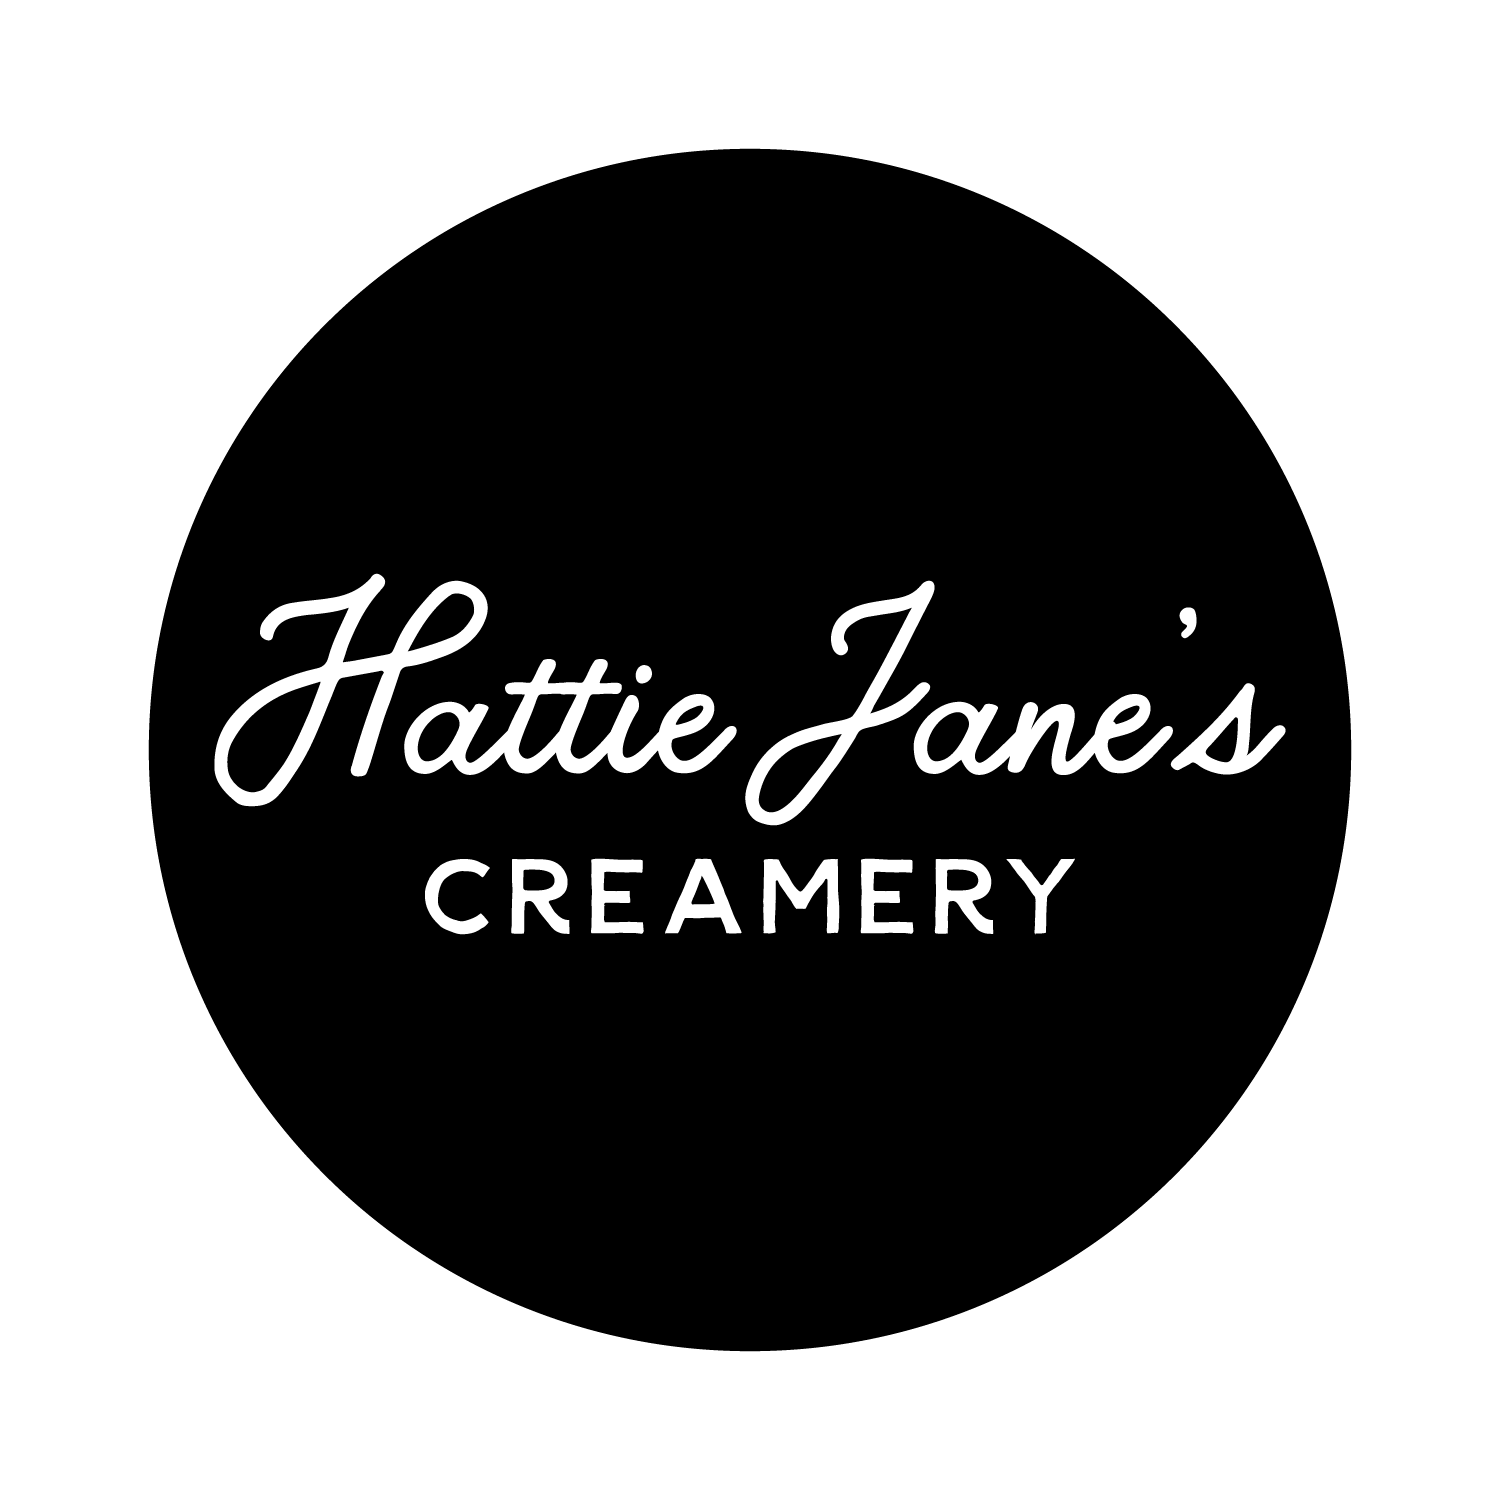 Hattie Jane's Creamery - Columbia